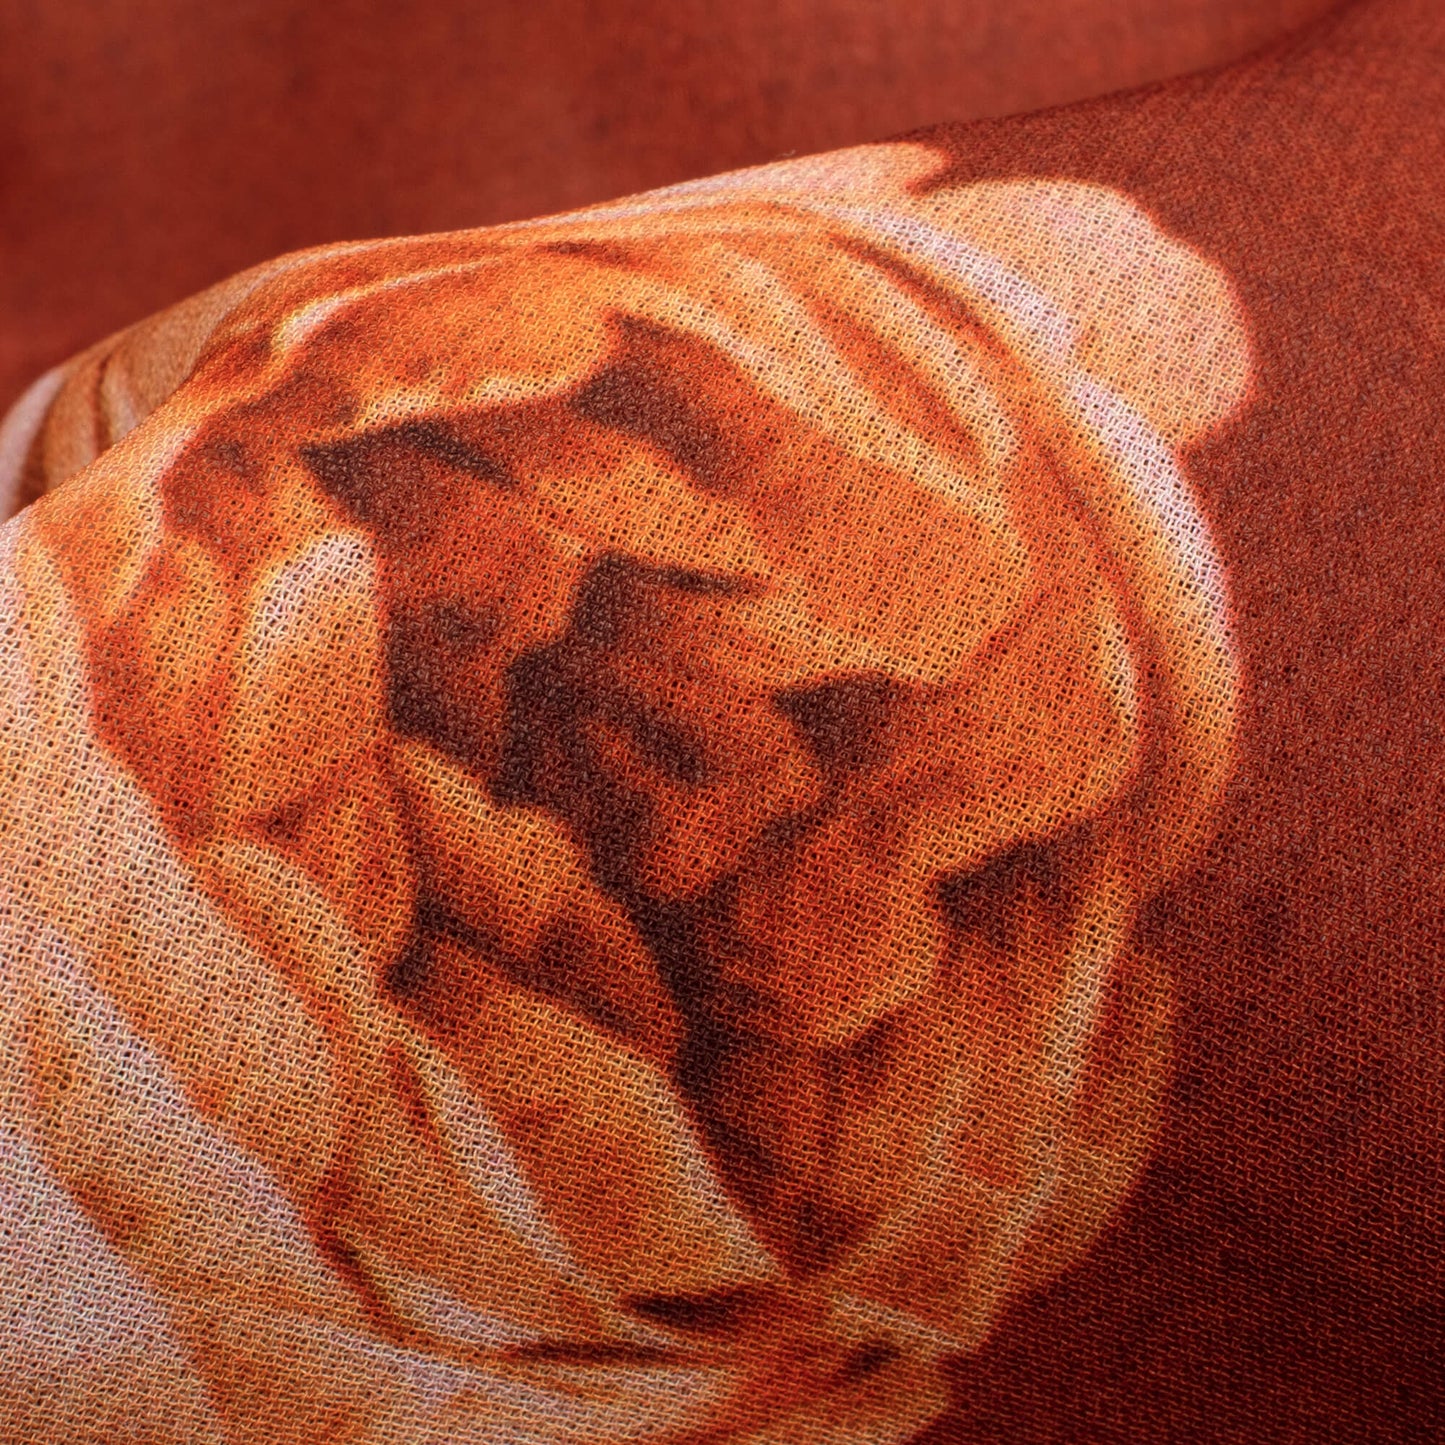 Cinnamon Brown Floral Pattern Digital Print Georgette Fabric